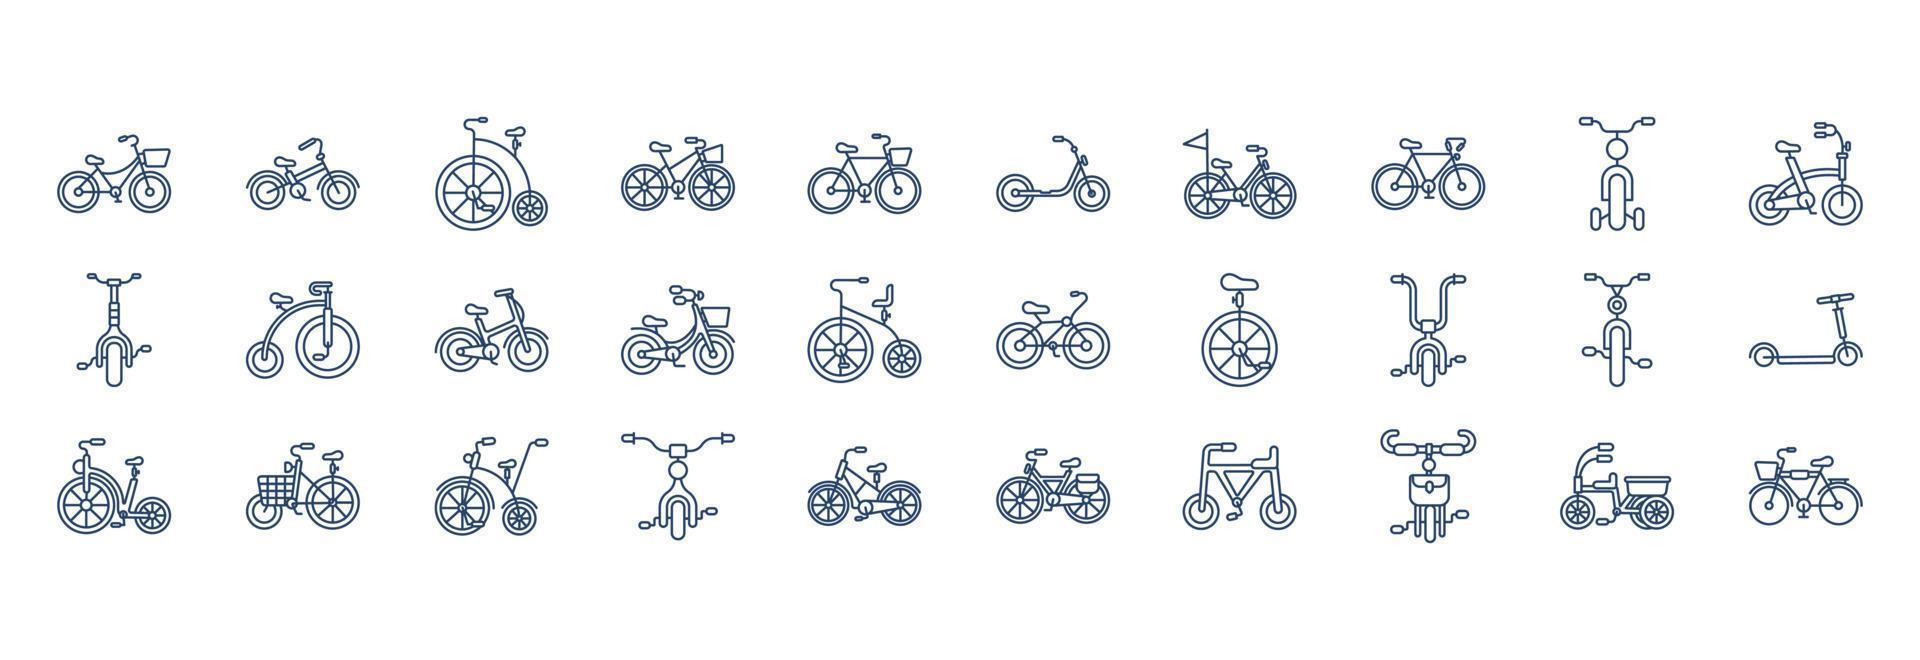 samling av ikoner relaterad till cykel, Inklusive ikoner tycka om hjul, trampa, sittplats och Mer. vektor illustrationer, pixel perfekt uppsättning